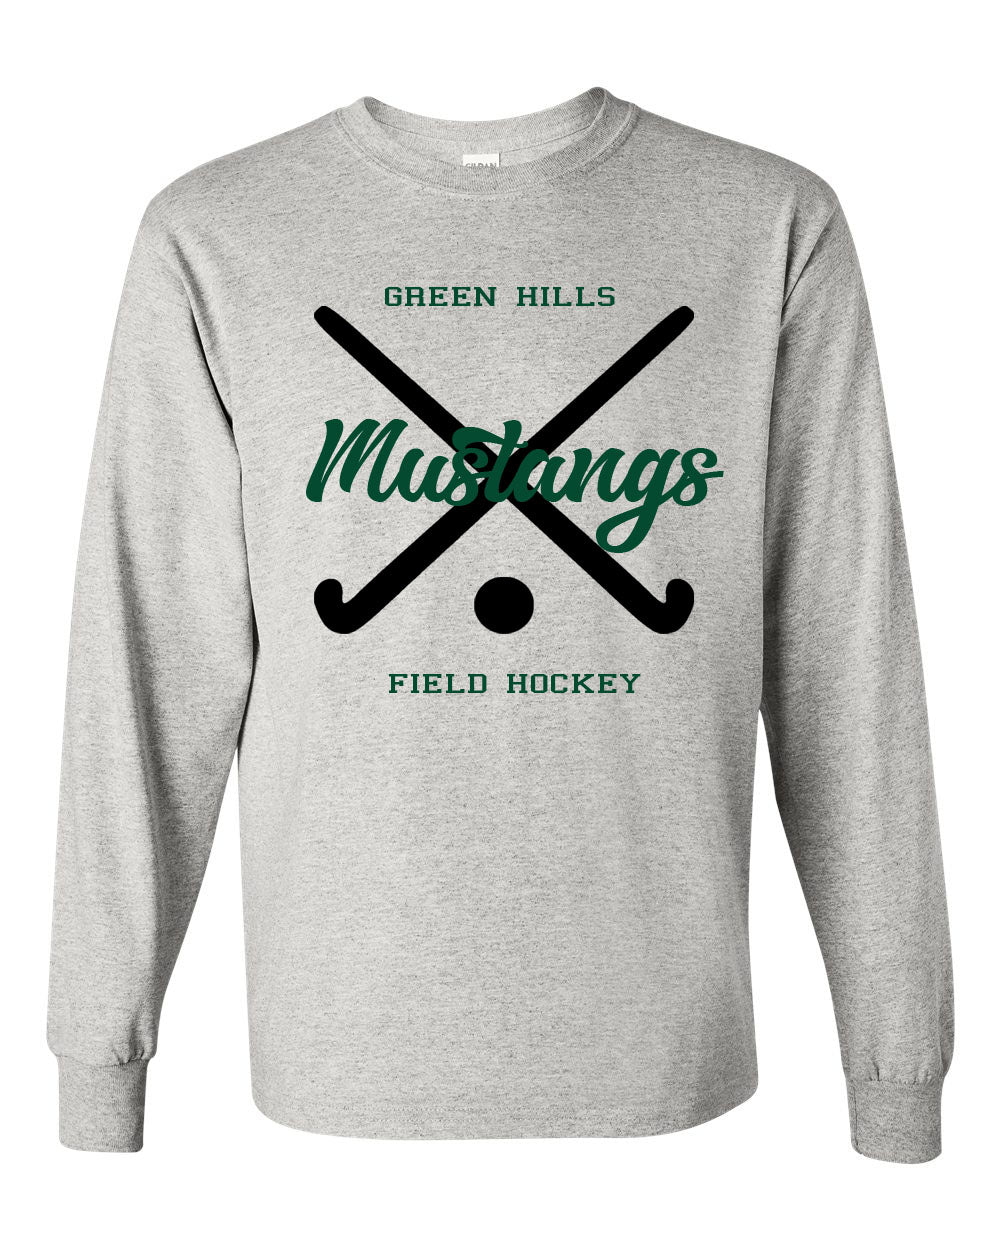 Green Hills Field Hockey design 2 Long Sleeve Shirt